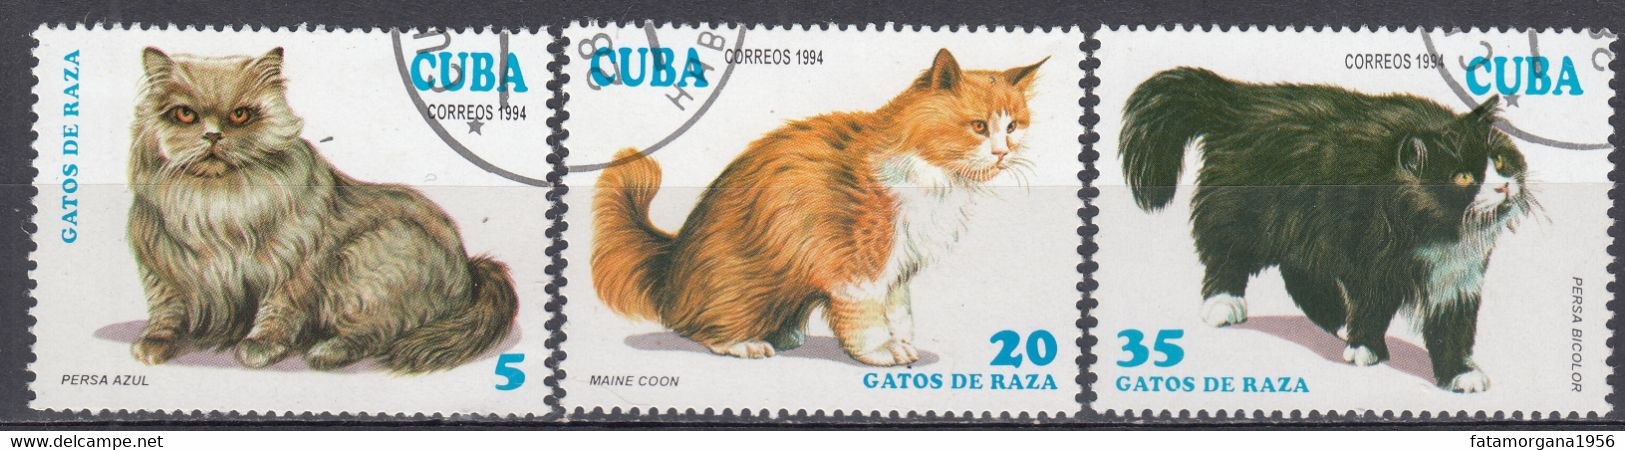 CUBA - 1994 - Lotto Di 3 Valori usati: Yvert 3351, 3353 E 3355, rappresentanti Gatti. - Oblitérés